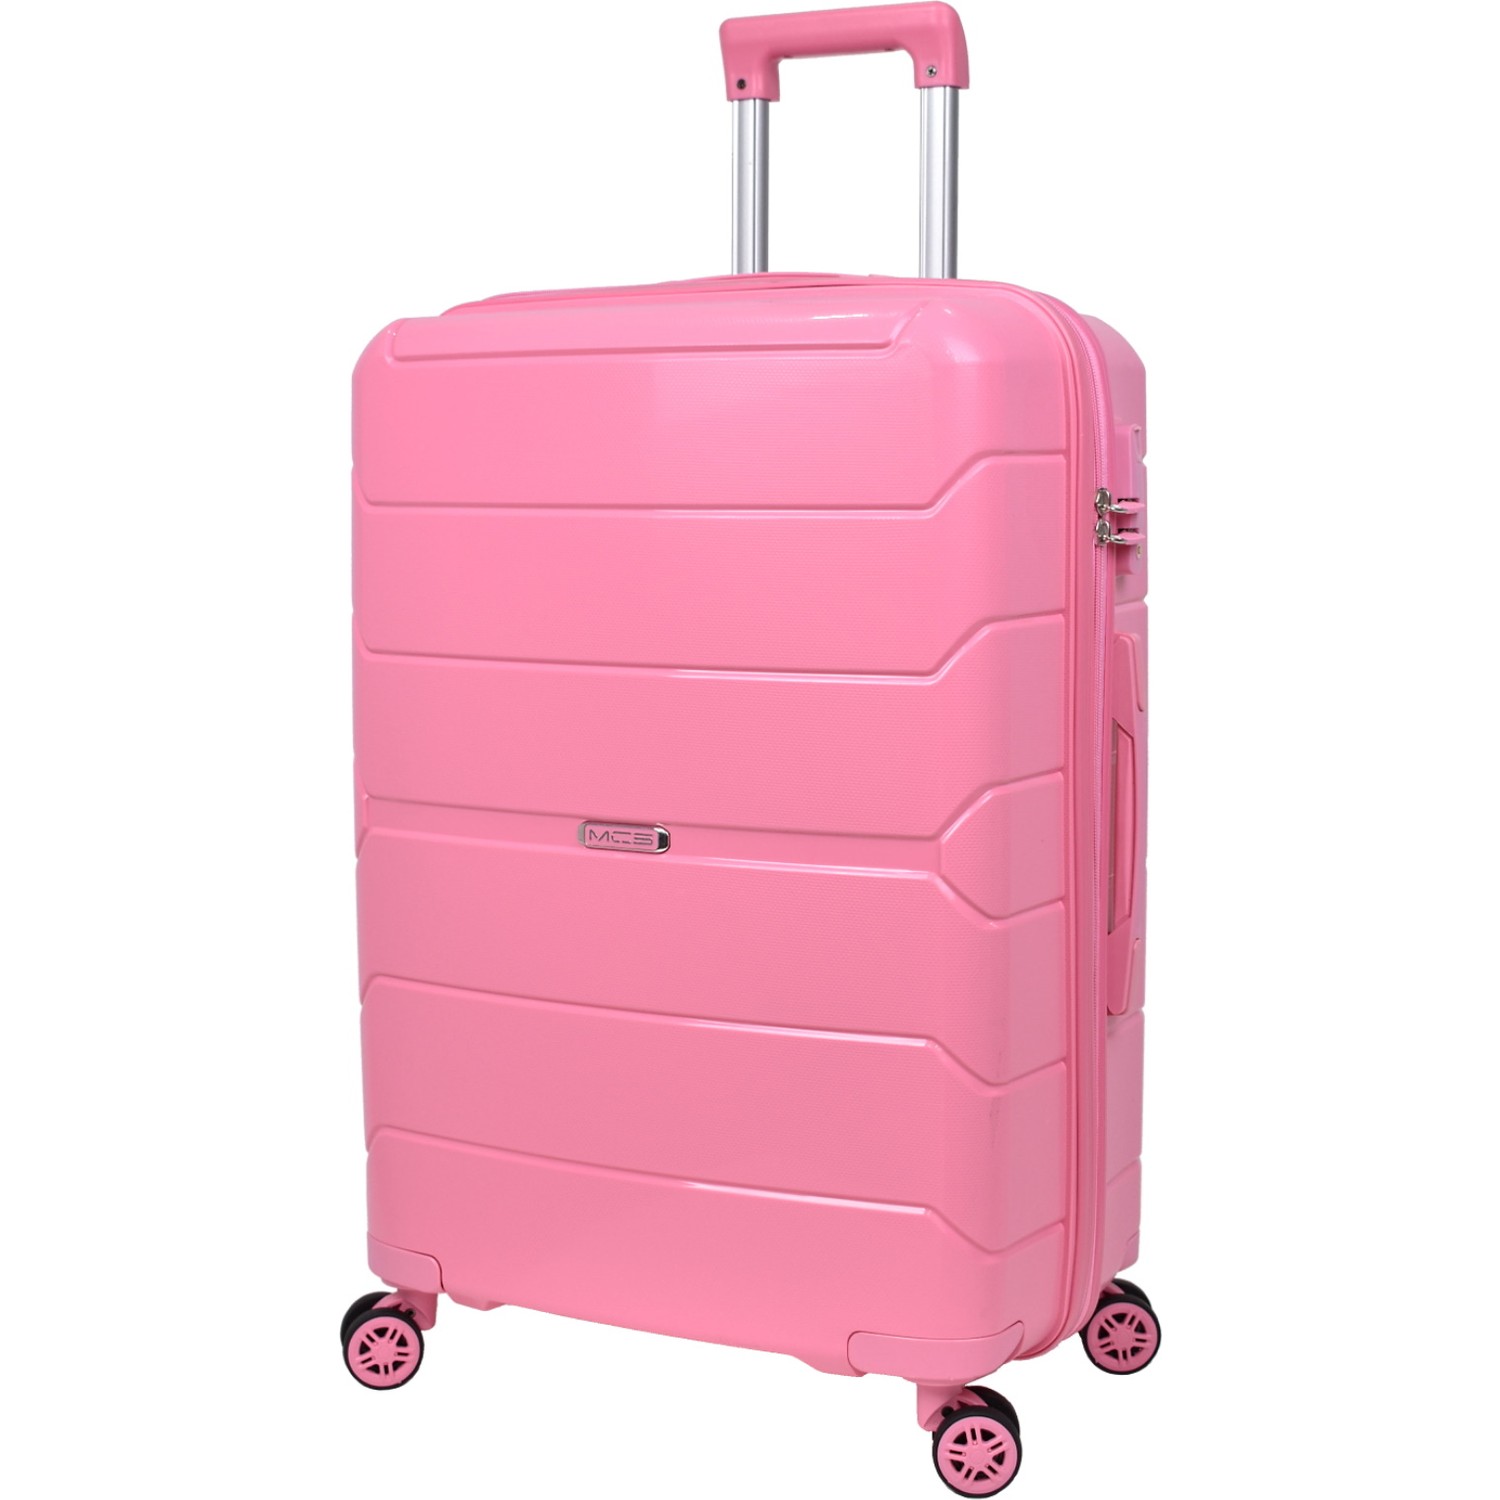 Большой чемодан из полипропилена MCS V366 L PINK! Для 23 кг! - 5